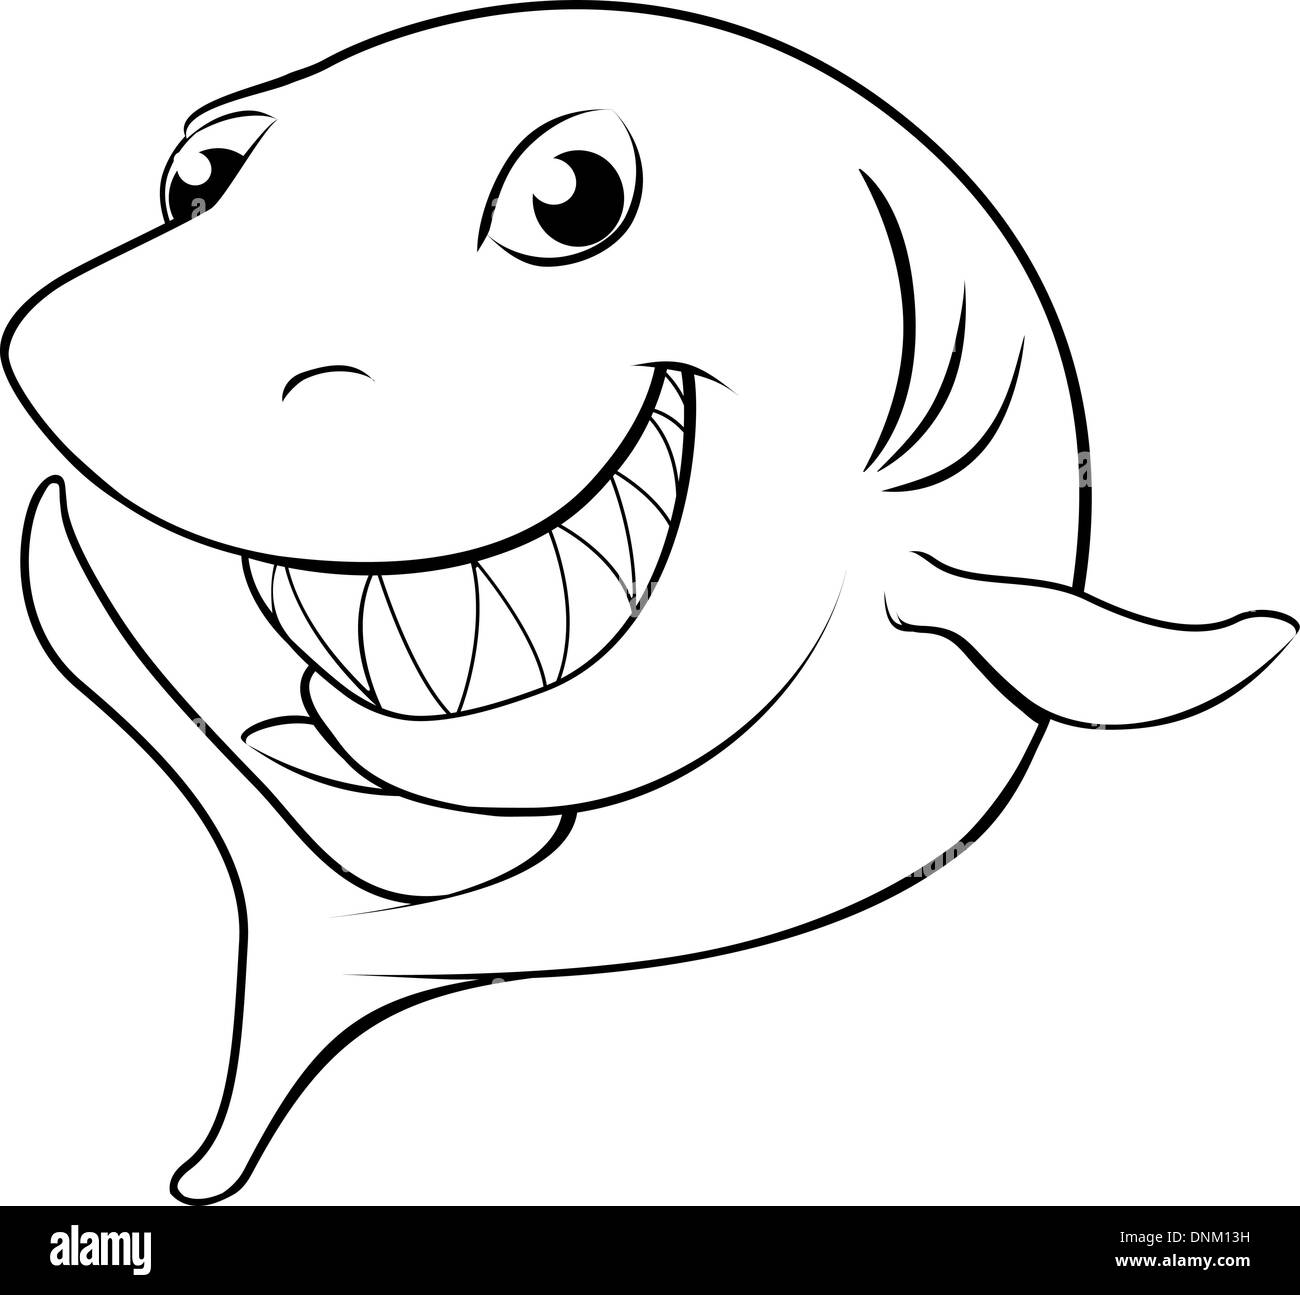 Illustration noir et blanc d'un heureux cartoon shark Illustration de Vecteur